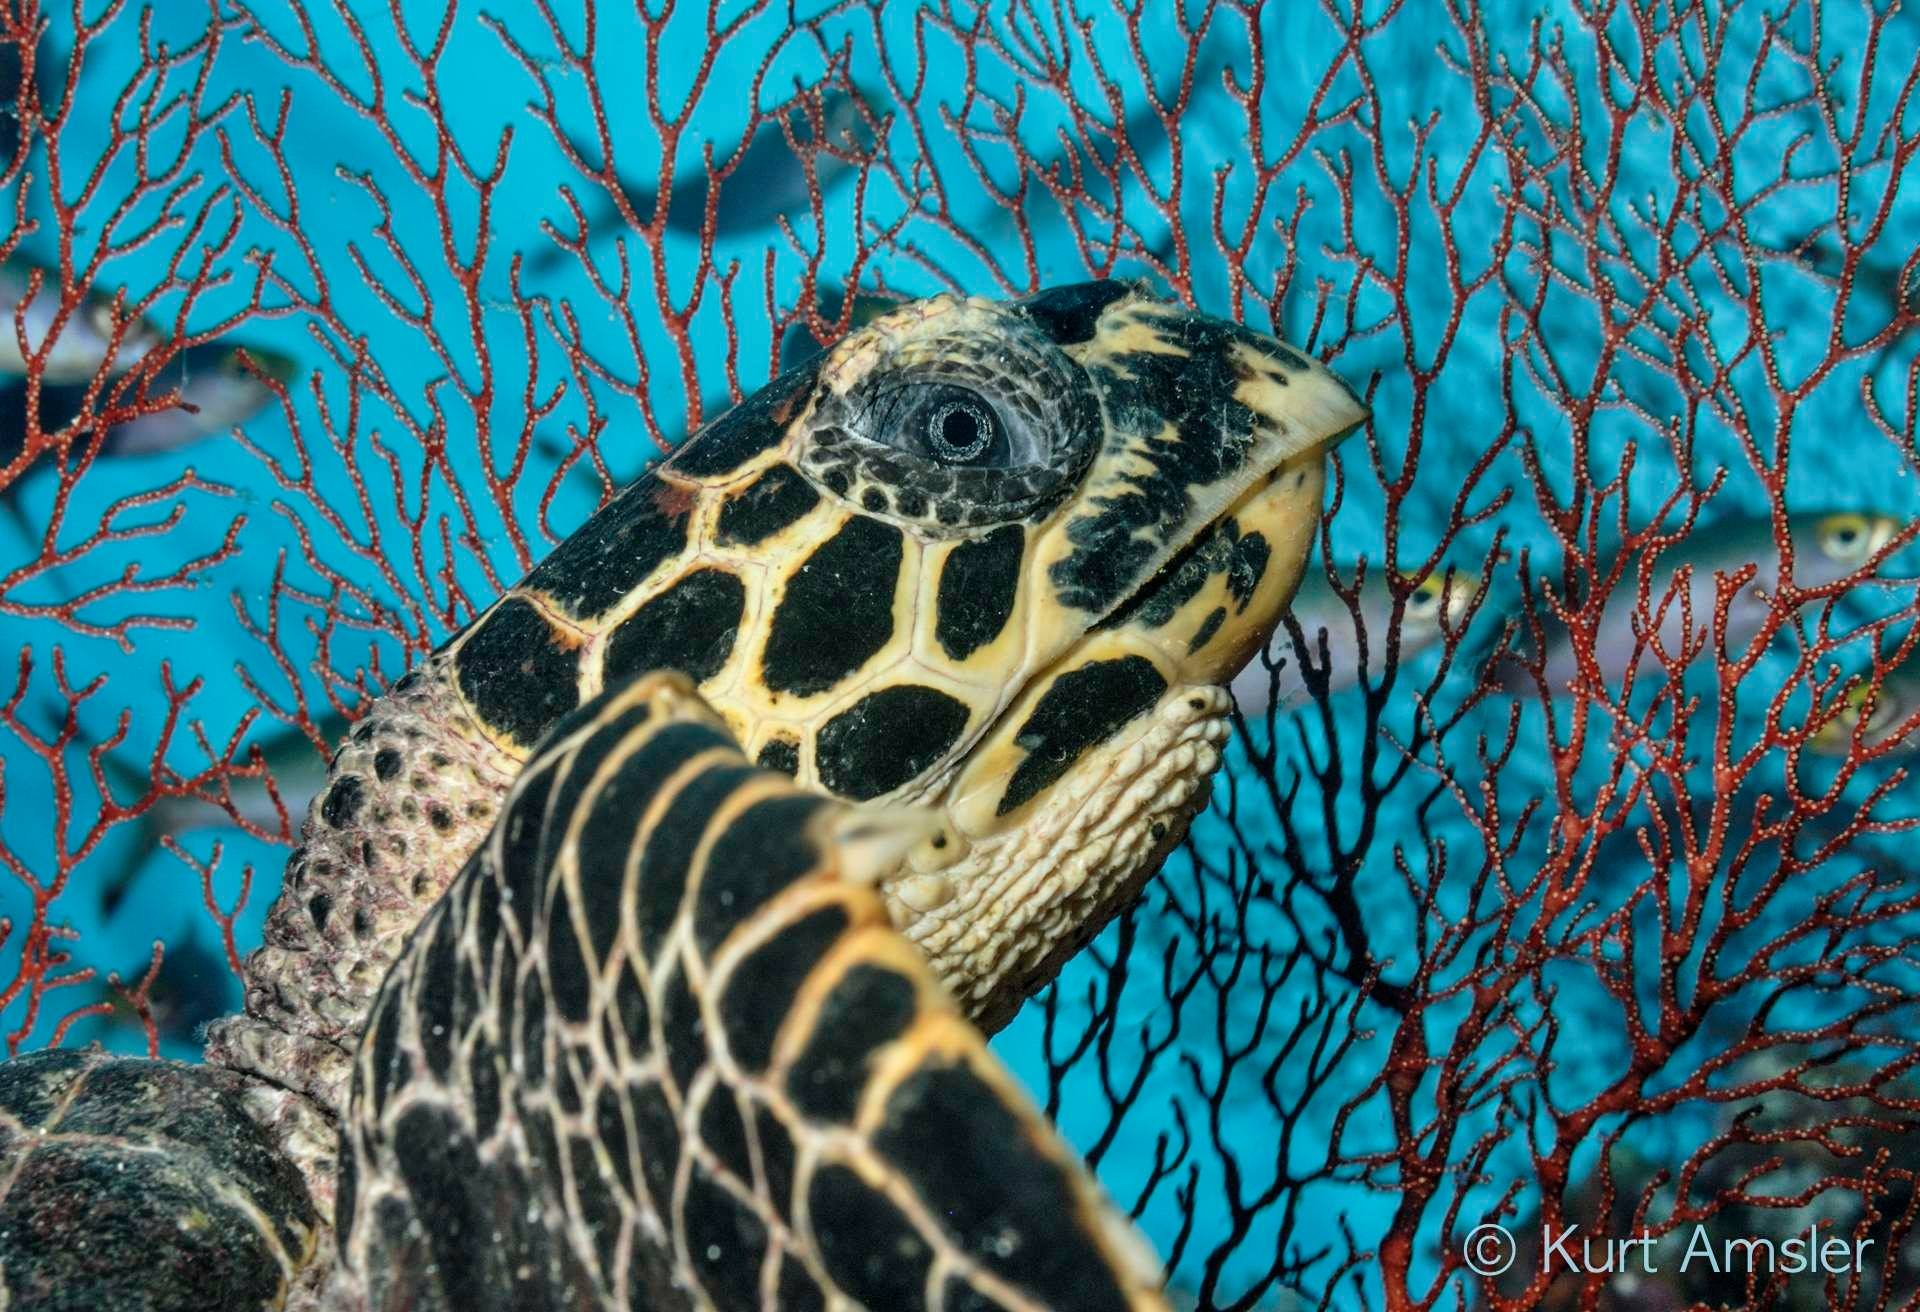 Hawksbill turtle portrait by Kurt Amsler